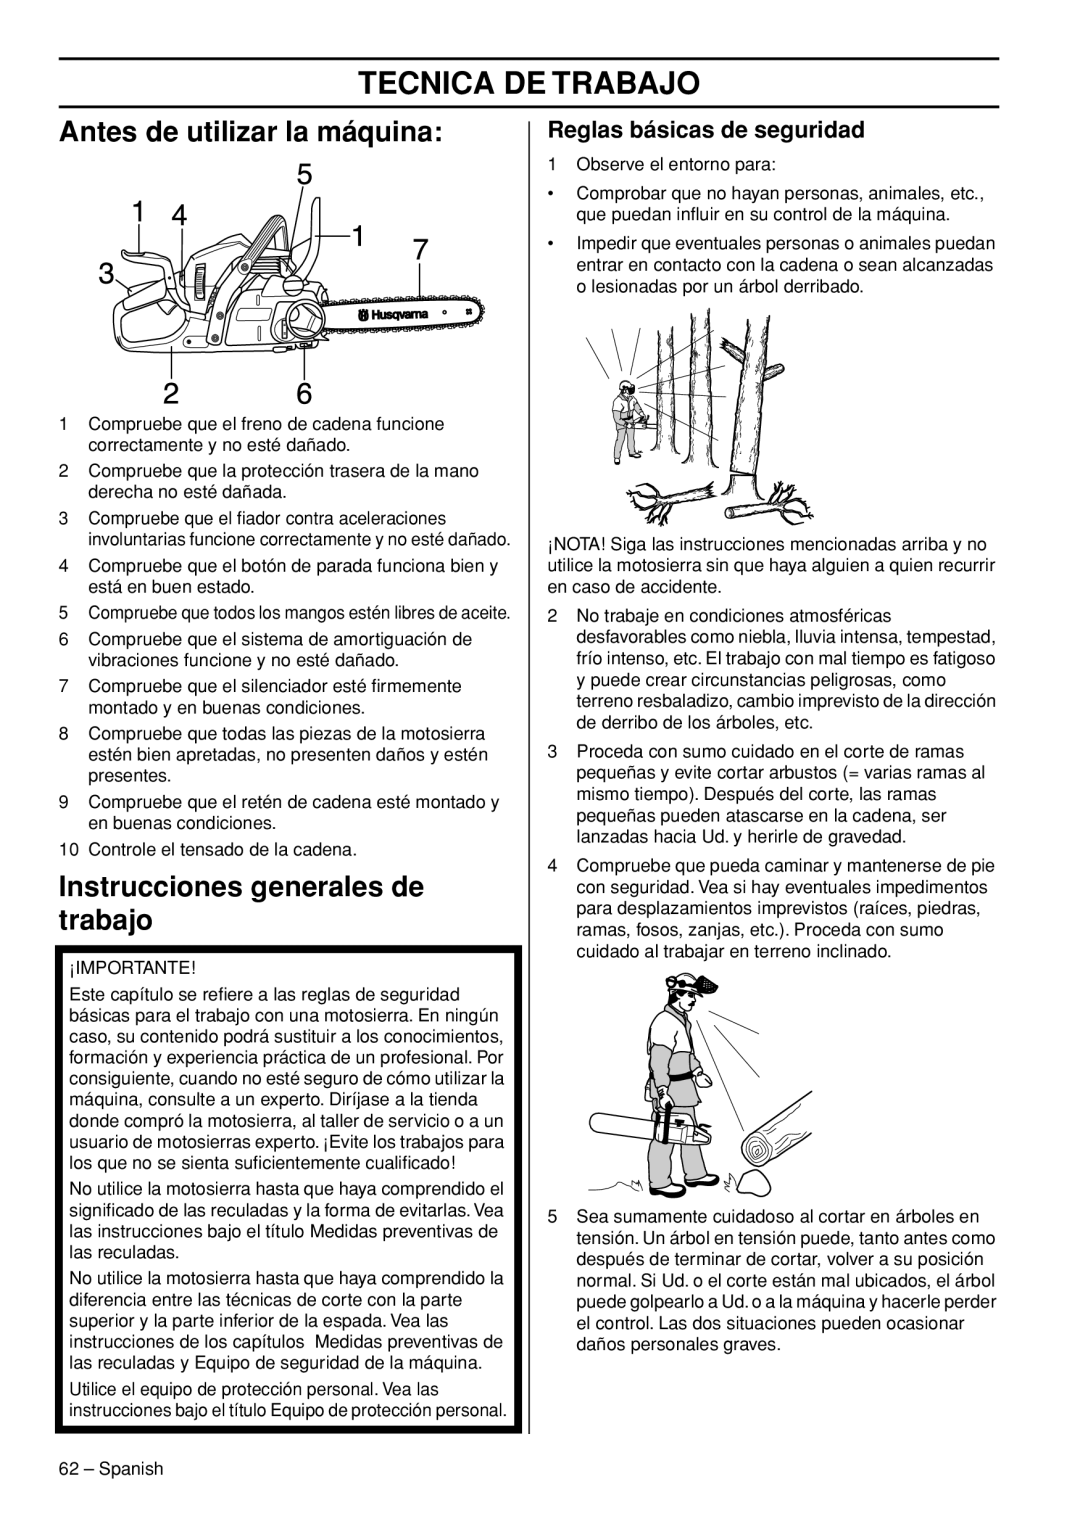 Husqvarna 445e TrioBrake manual Tecnica De Trabajo, Antes de utilizar la máquina, Instrucciones generales de trabajo 